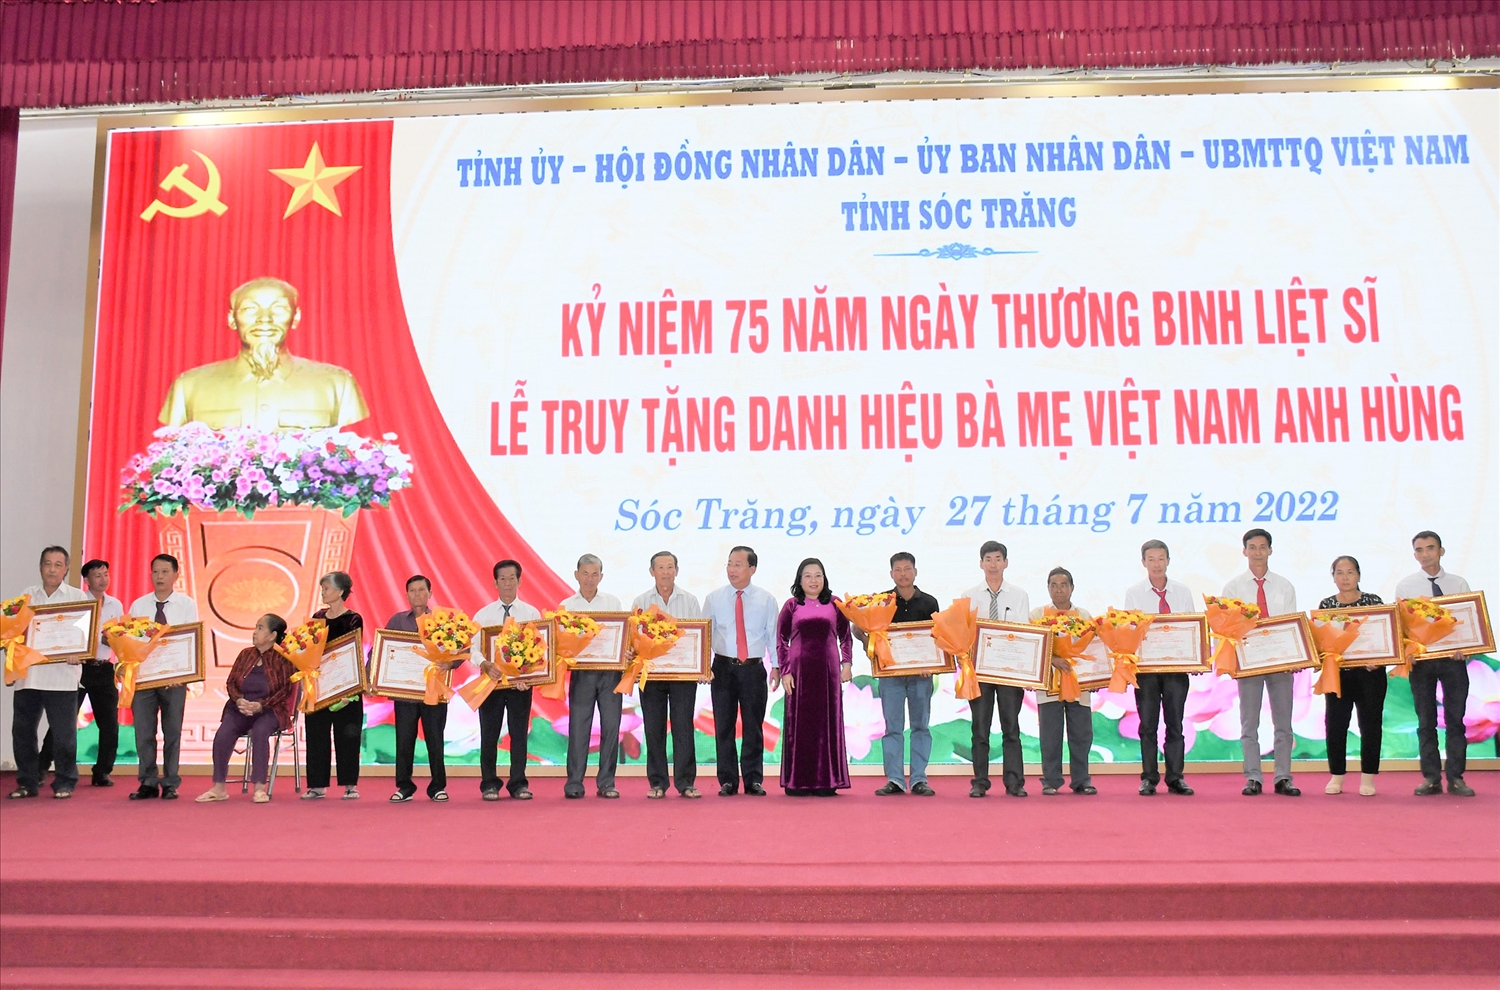 Bà Hồ Thị Cẩm Đào - Phó Bí thư Thường trực, Chủ tịch HĐND tỉnh trao quyết định của Chủ tịch nước truy tặng danh hiệu Mẹ Việt Nam Anh hùng đến thân nhân của các Mẹ 